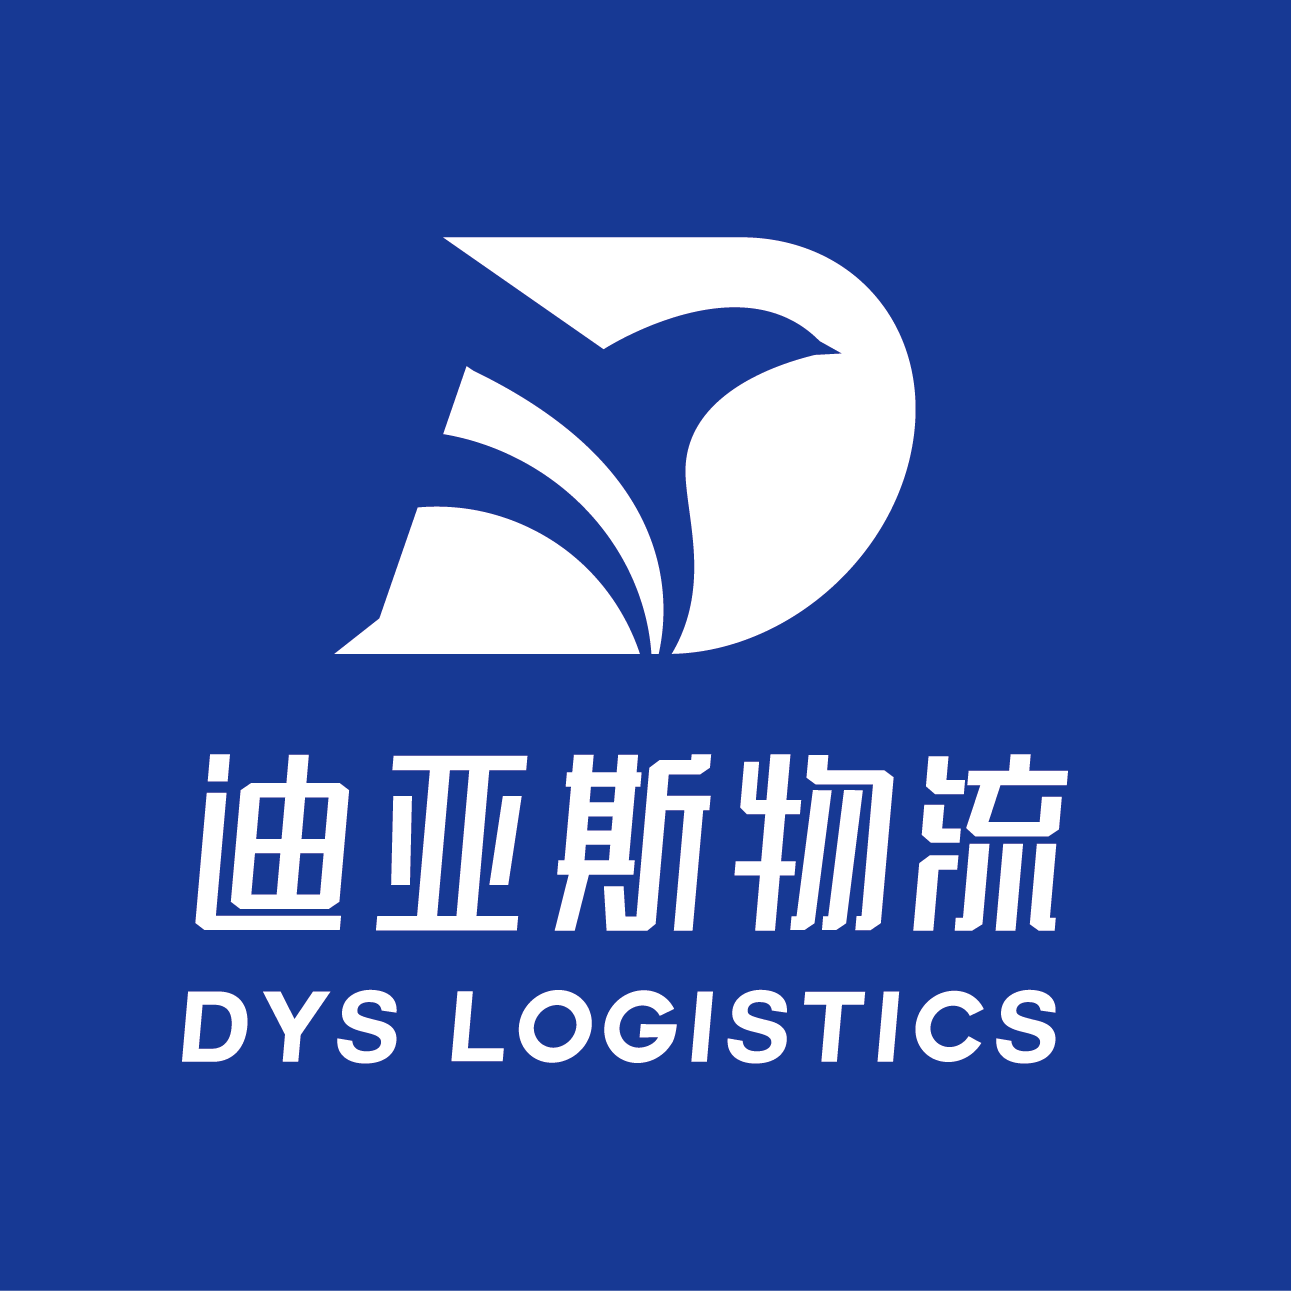 迪亚斯物流有限公司logo